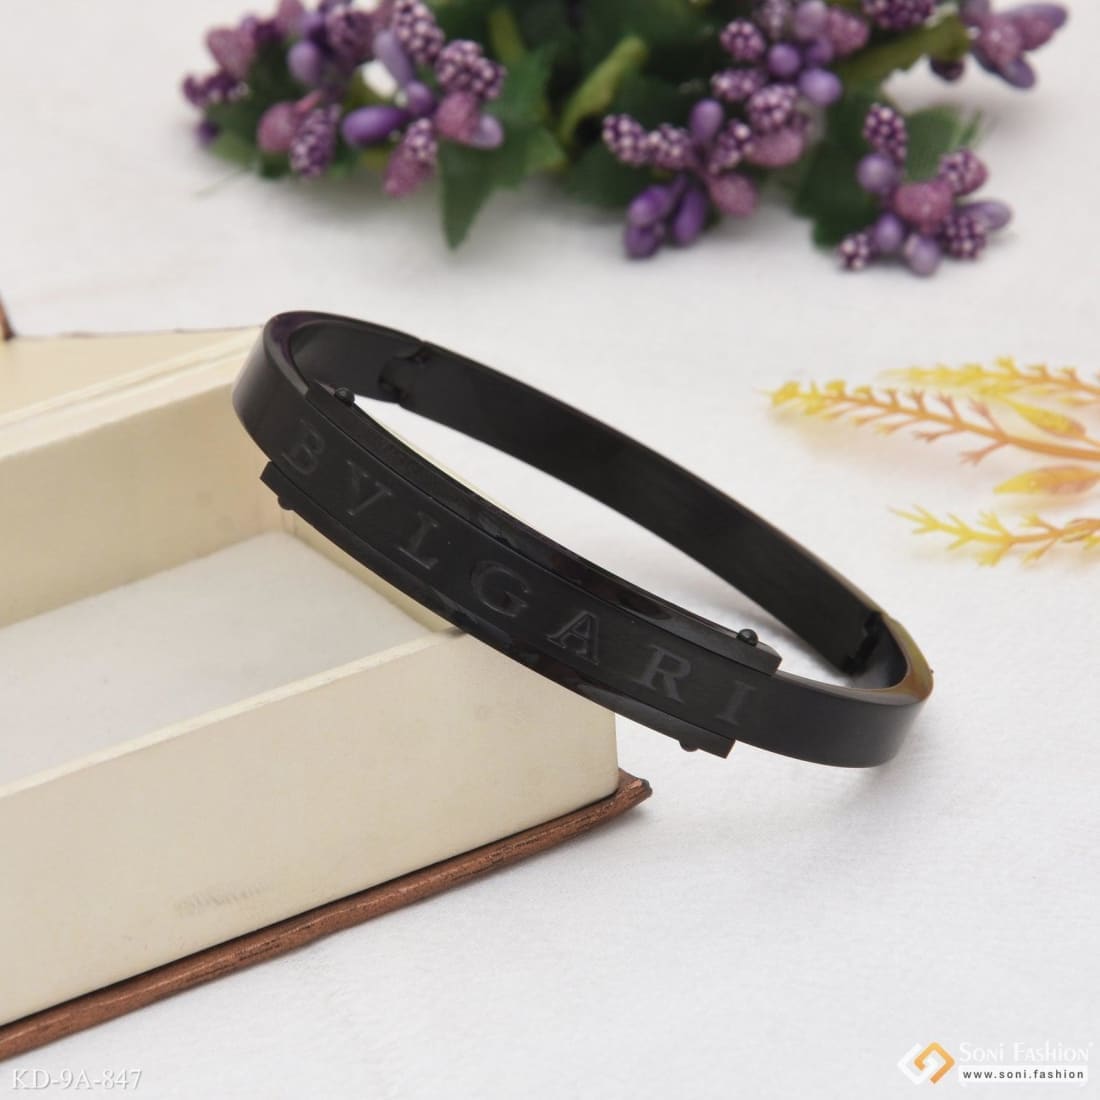 Bvlgari B.Zero1 Bangle Bracelet 18K White Gold Size Medium | eBay